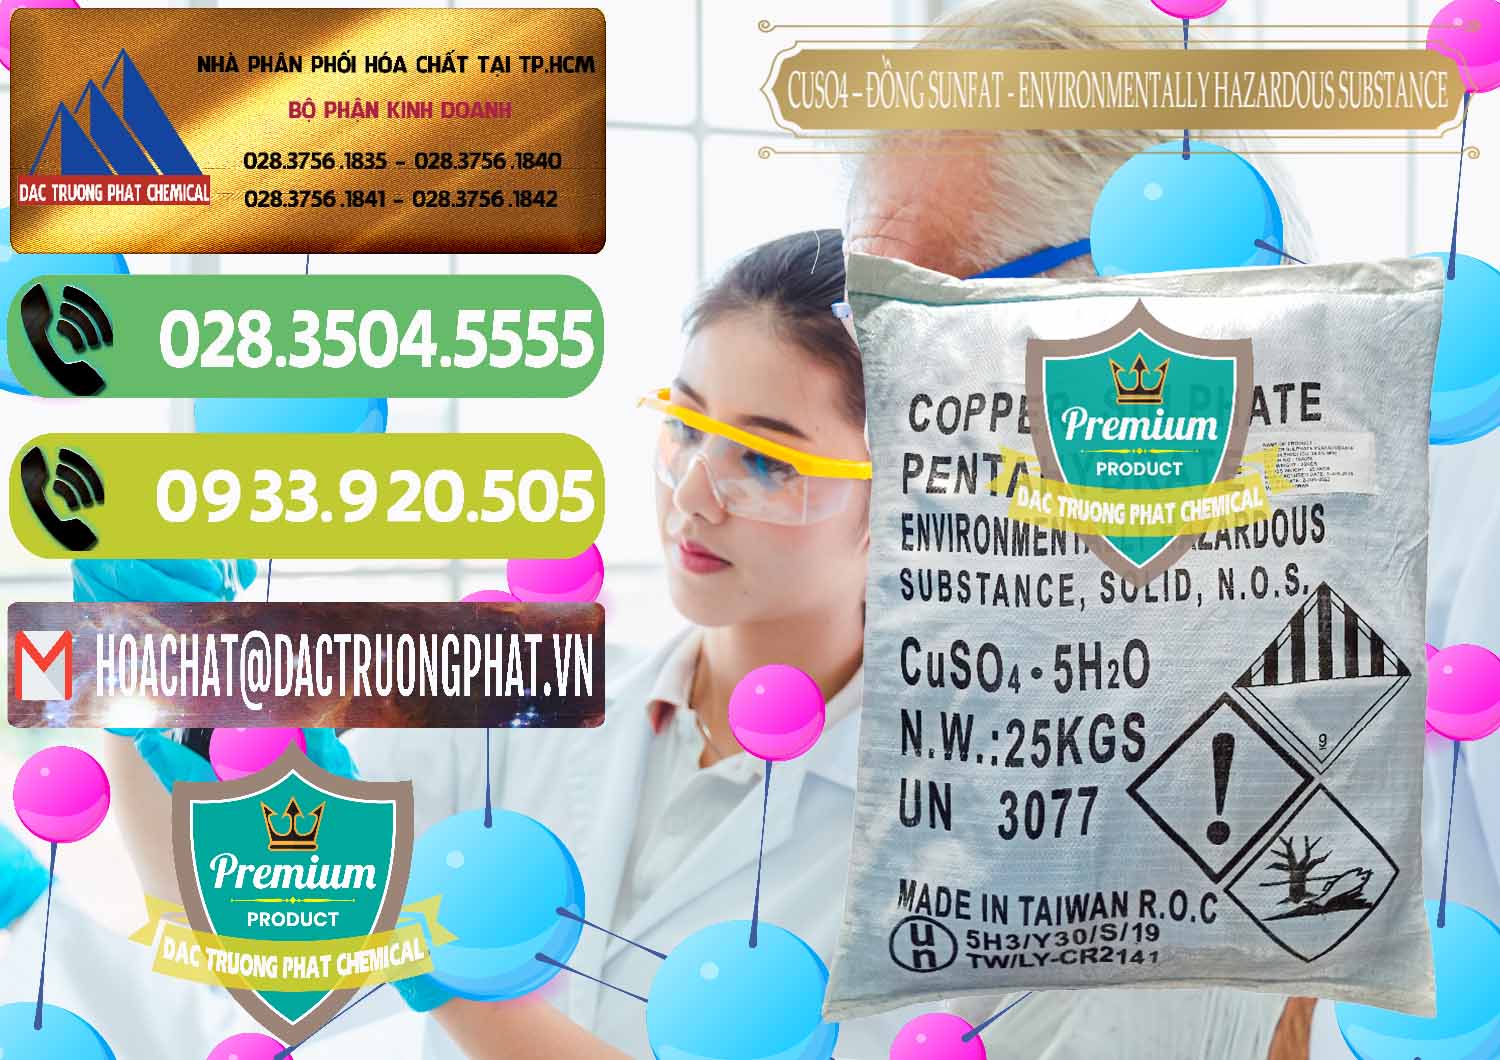 Đơn vị chuyên nhập khẩu - bán CuSO4 – Đồng Sunfat Đài Loan Taiwan - 0059 - Công ty chuyên kinh doanh - phân phối hóa chất tại TP.HCM - hoachatmientay.vn